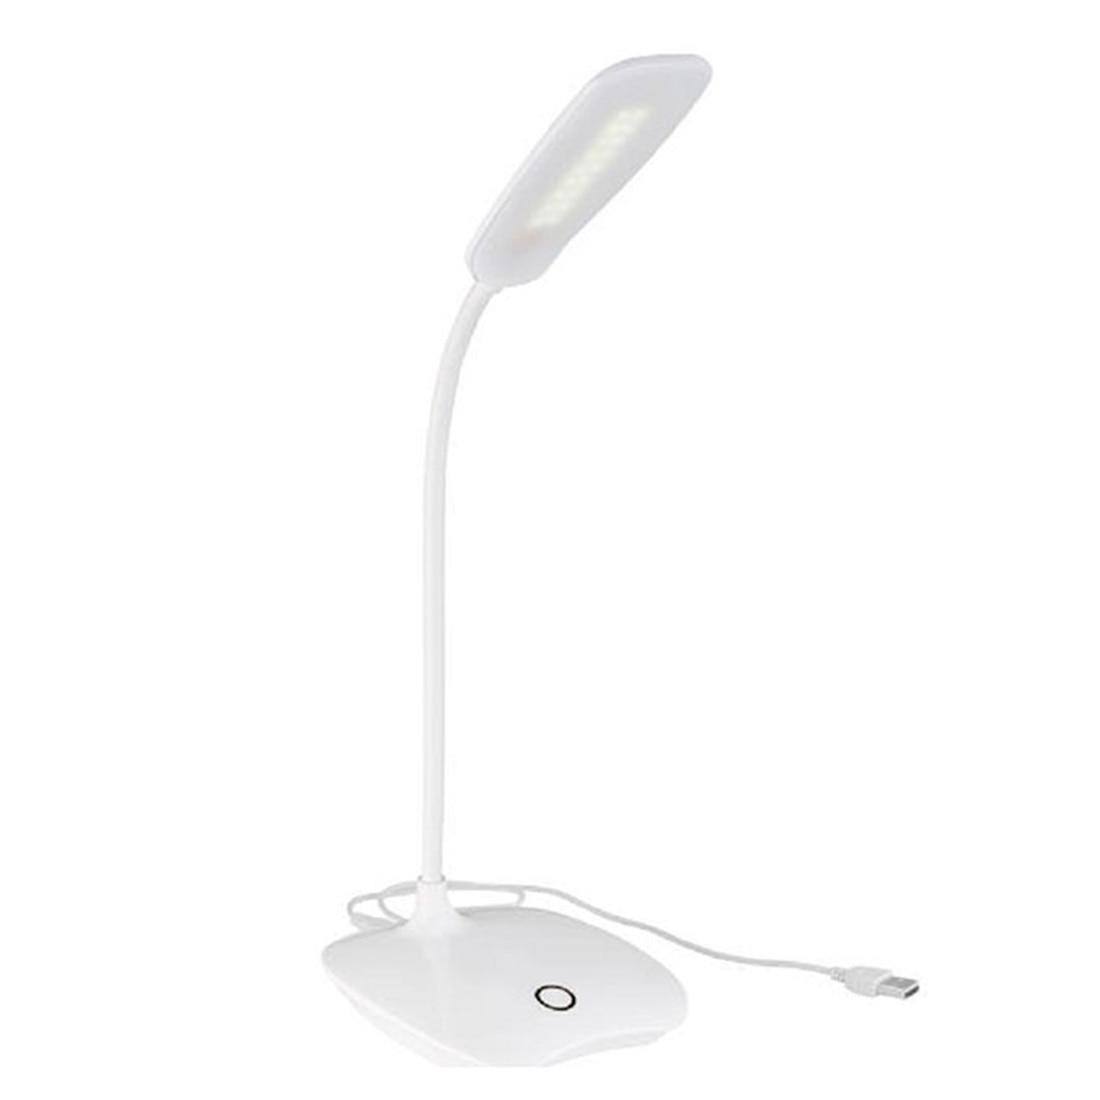 LAMPE DE BUREAU USB ( ) - Lampes à LED Digital noWmad - Matériel télétravail : Équipez-vous pour une expérience 2.0 ! Équipements et accessoires de bureau pour un télétravail confortable, efficace et flexible. Aménagez votre espace et gagnez en ergonomie. Casques, chaises, sous-mains, mouse jigglers... Exploitez tout le potentiel du travail à distance pour trouver votre équilibre, en voyage comme à la maison.